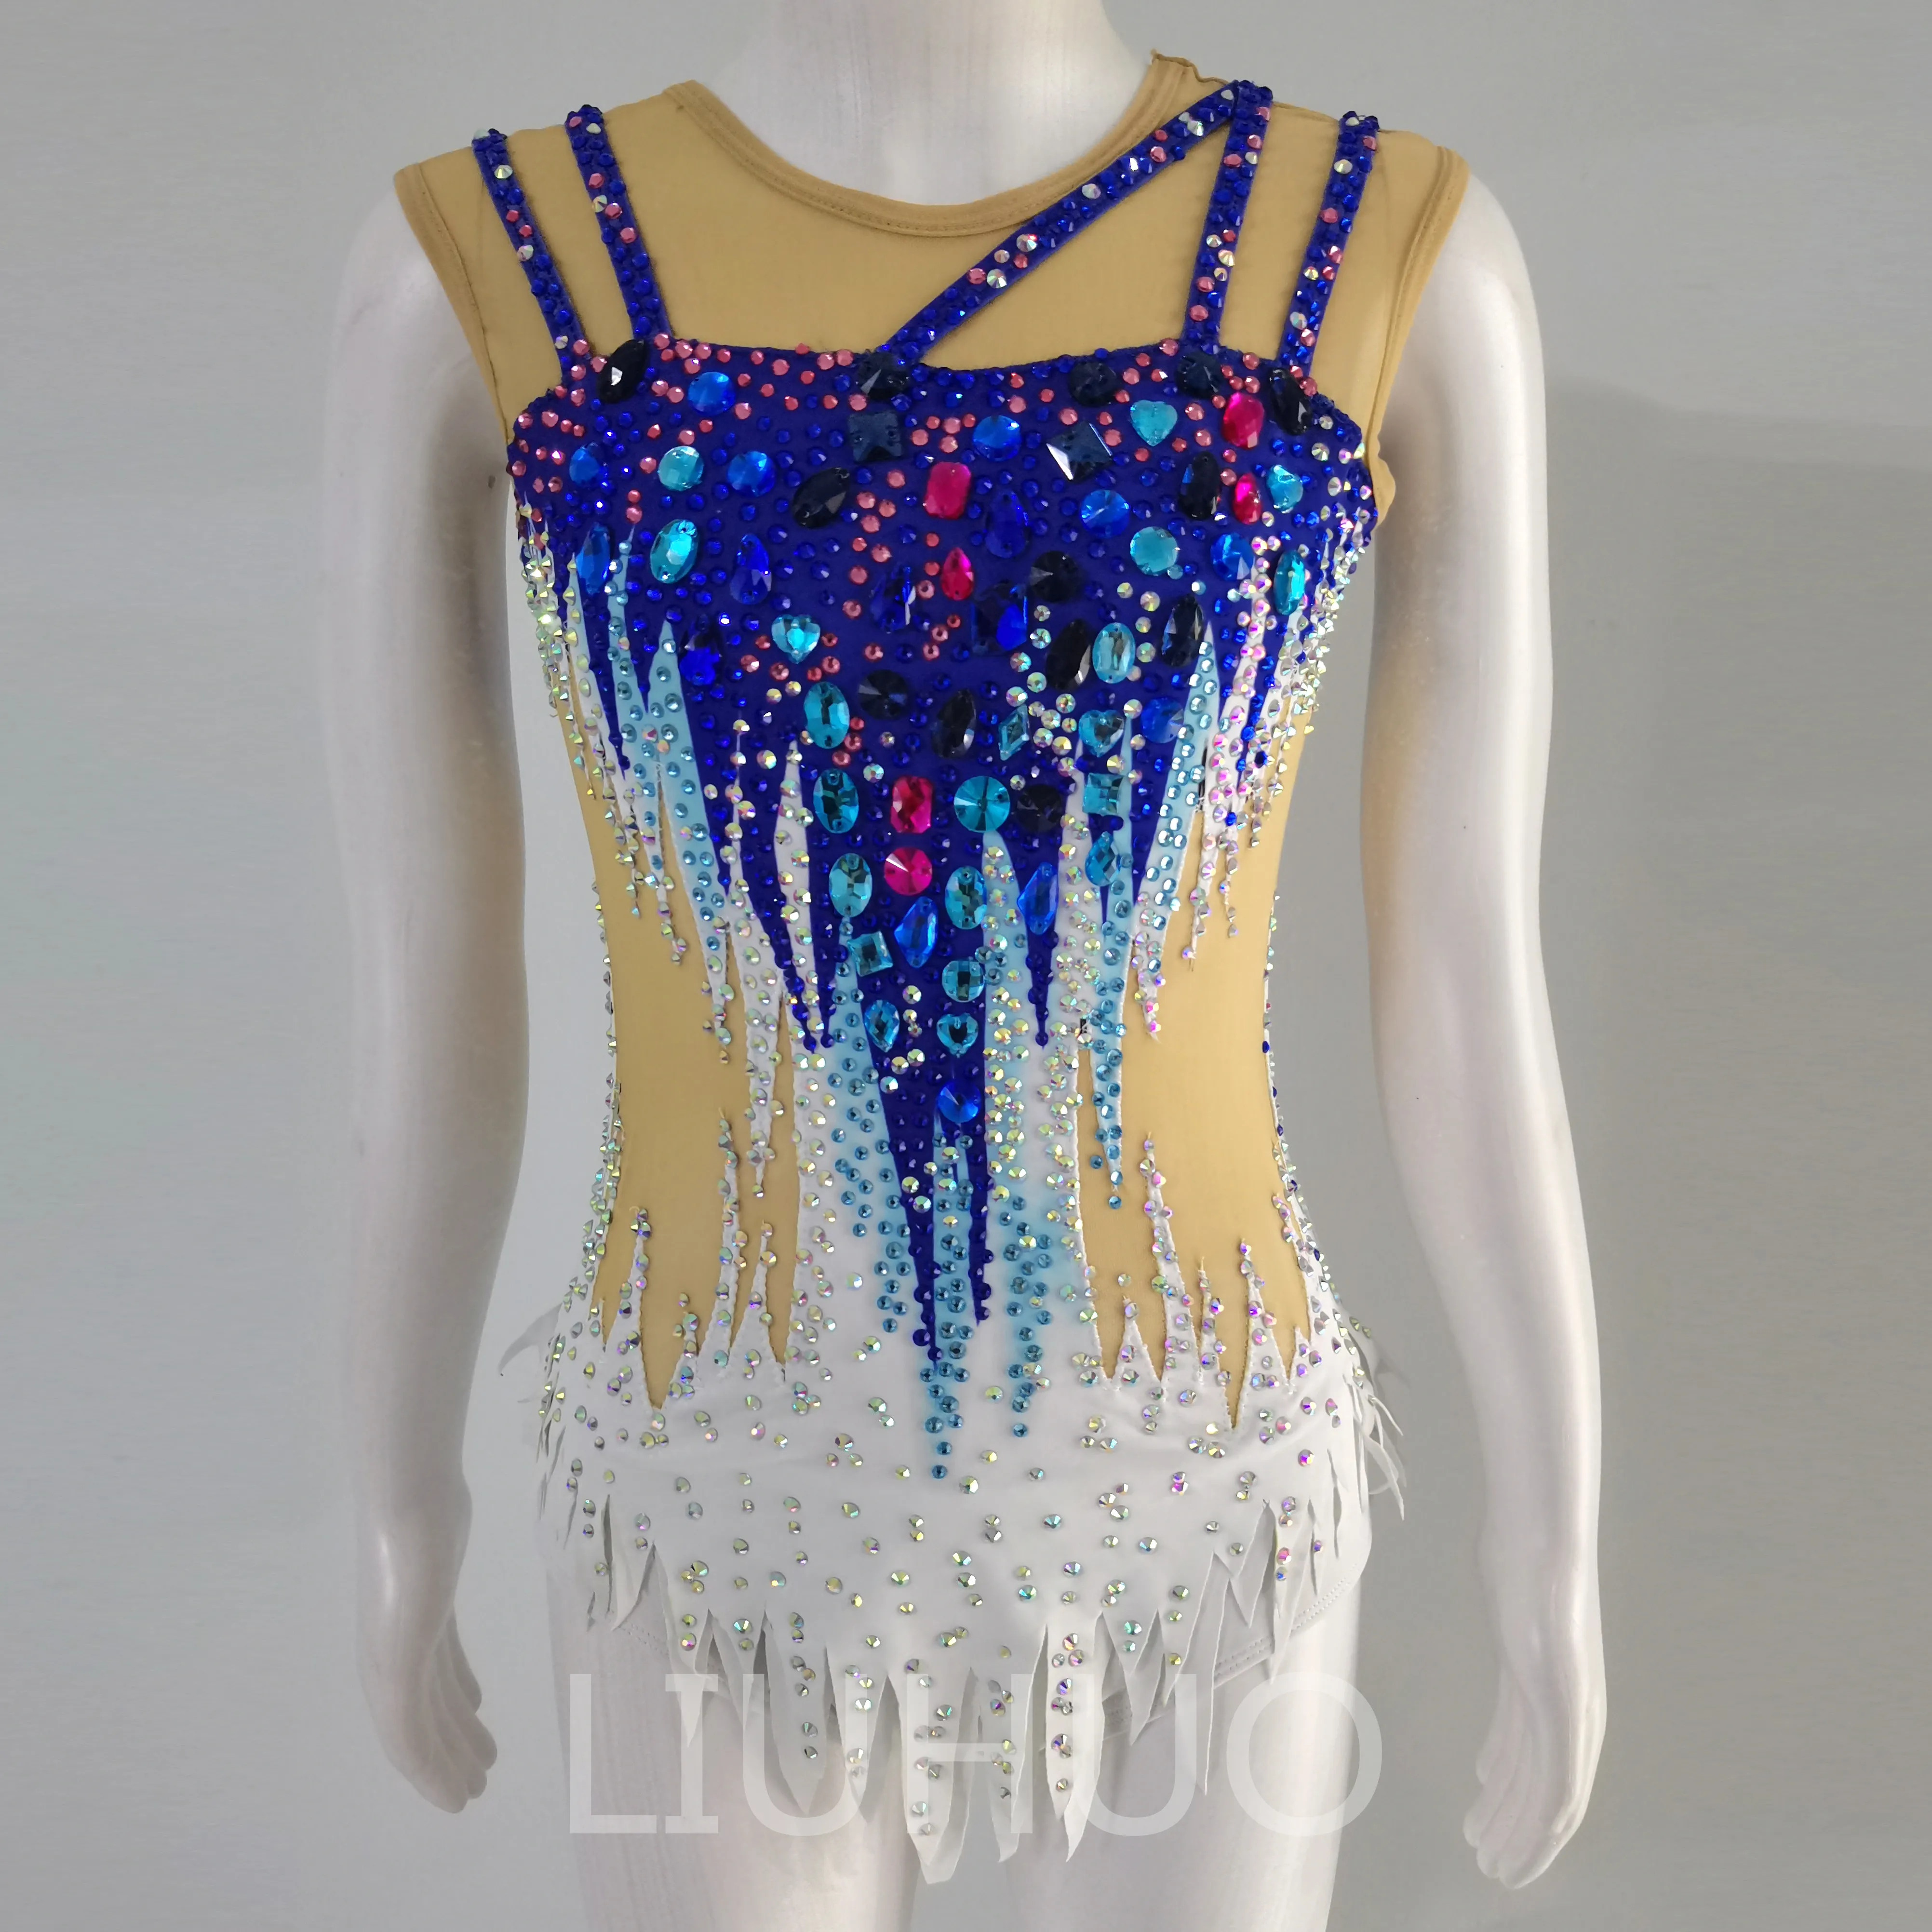 Liuhuo dostosuj kolory rytmiczny gimnastyka Templanika Dziewczyny Kobiety Konkurs Artystyka Gymnastics Performance Crystals Blue BD1771